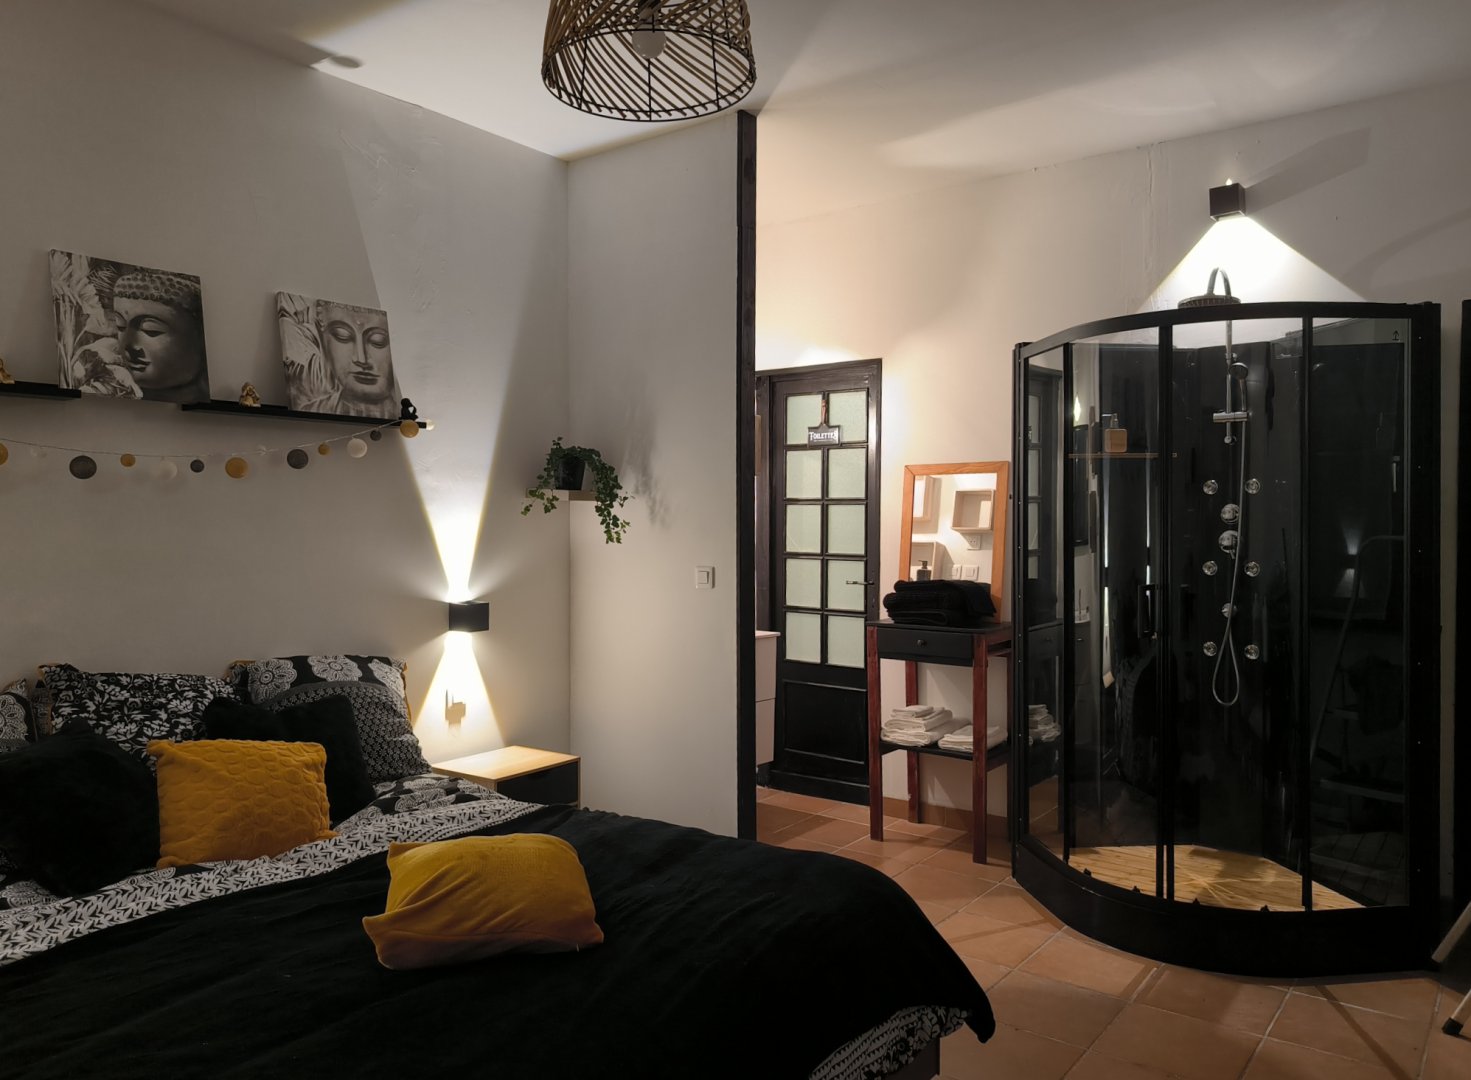 Chambres d'hôtes "Le temps pour soi", chambre et suite familiale Privas,  Ardèche